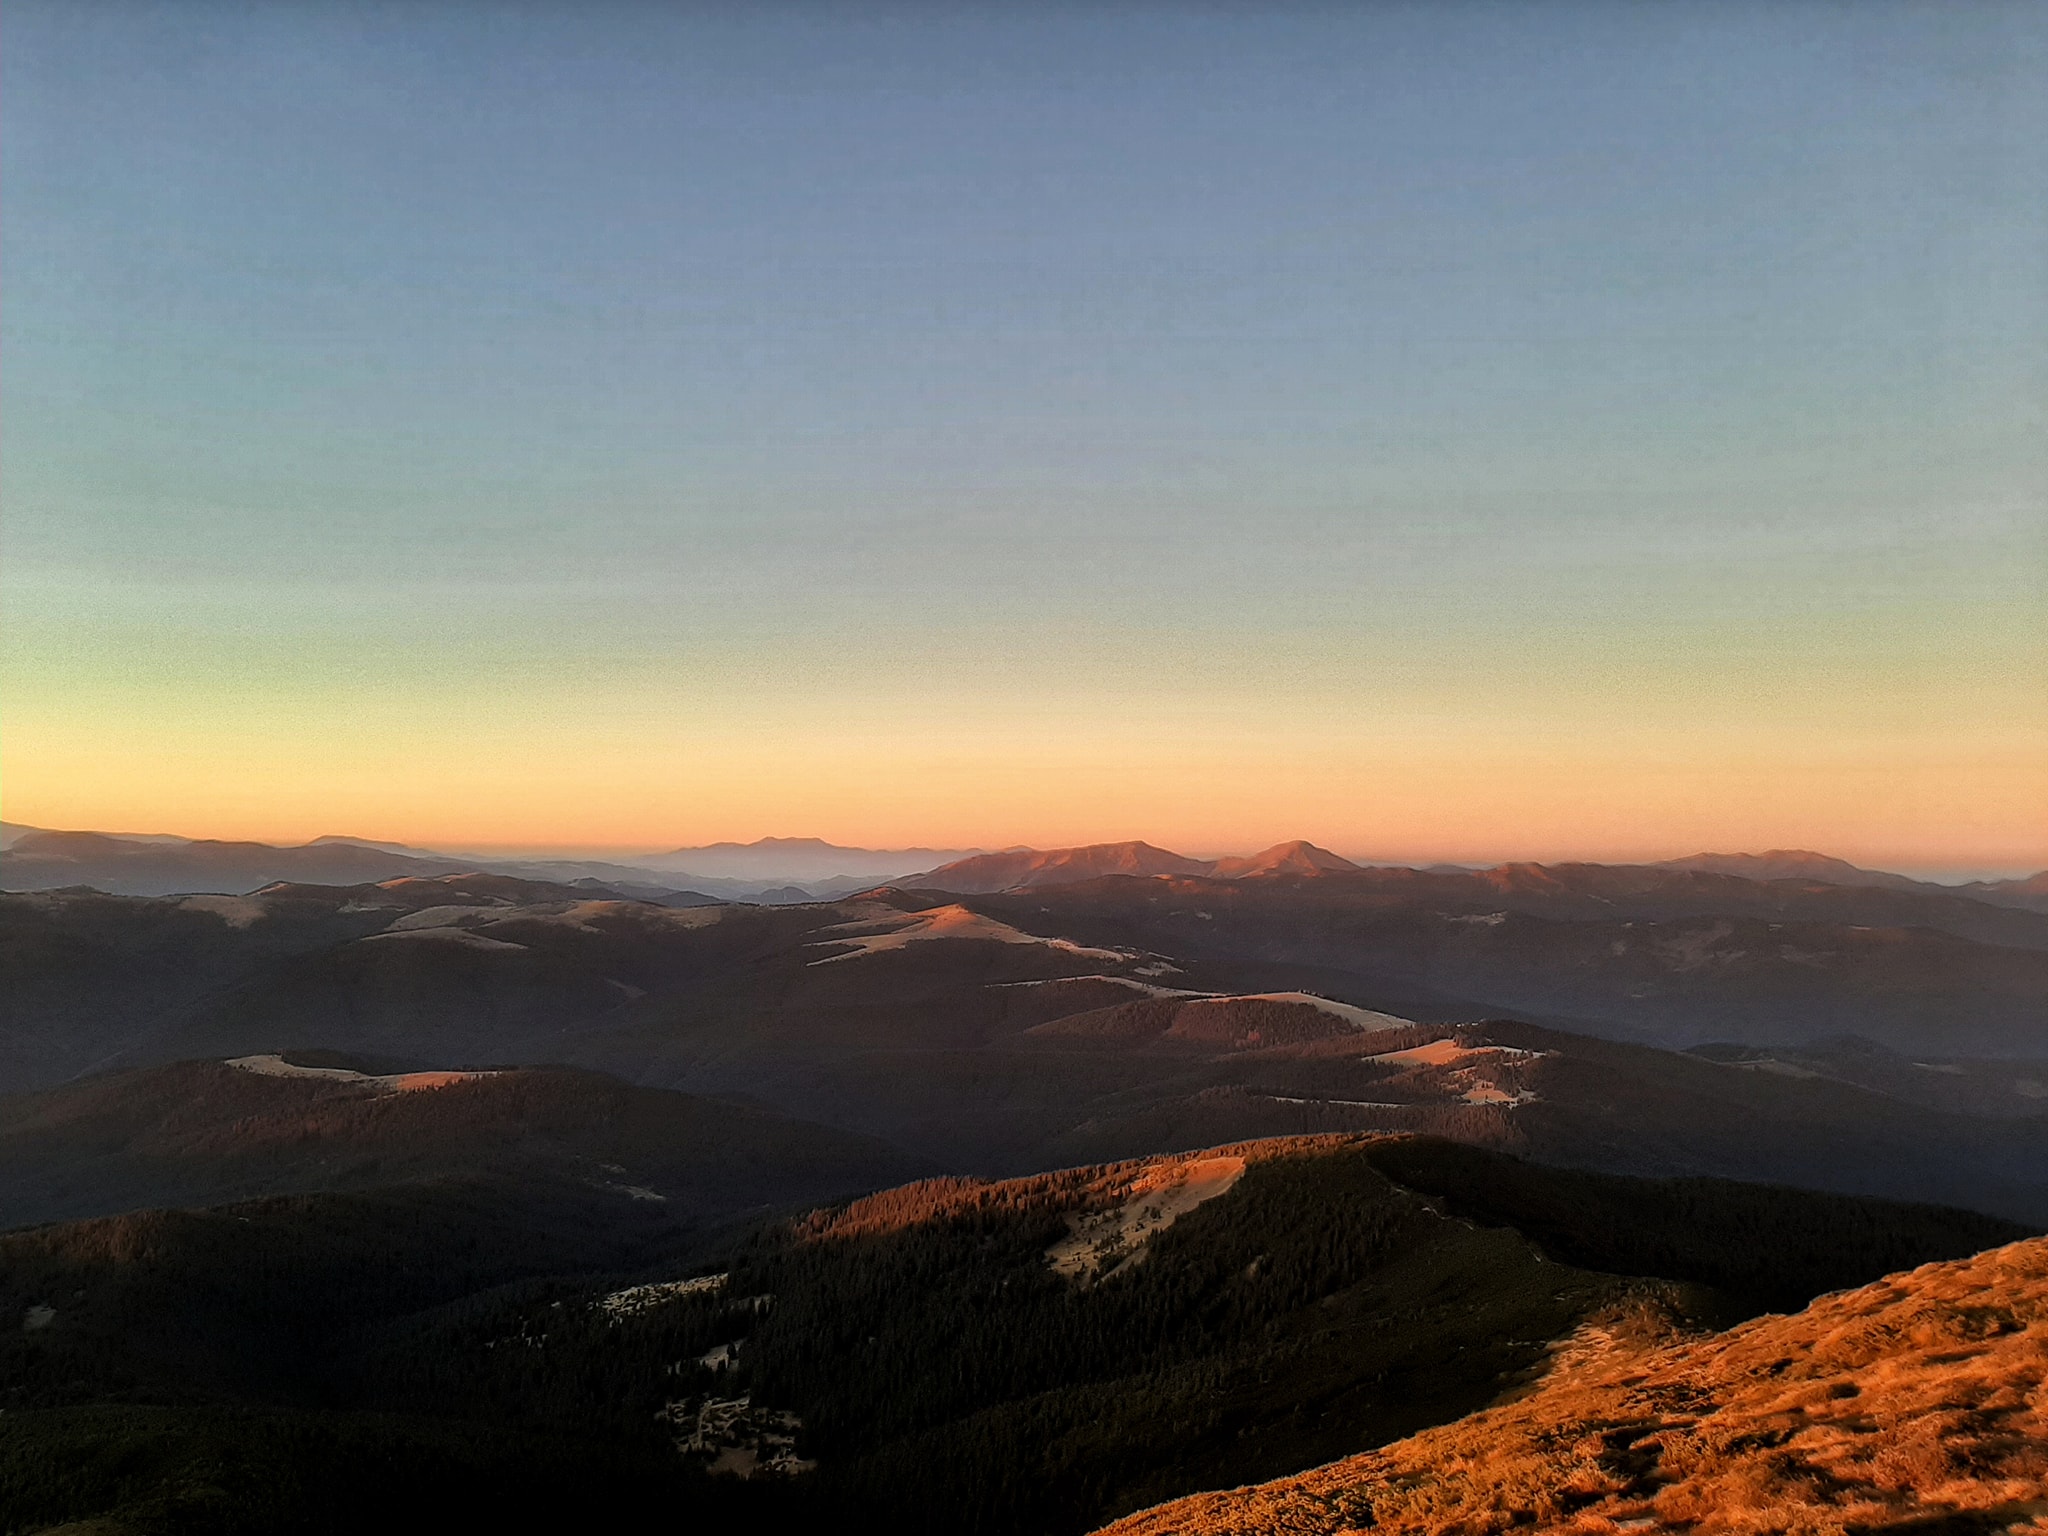 Фотографии полусонной закарпатской вершины - горы Поп Иван Черногорский были опубликованы в Facebook.